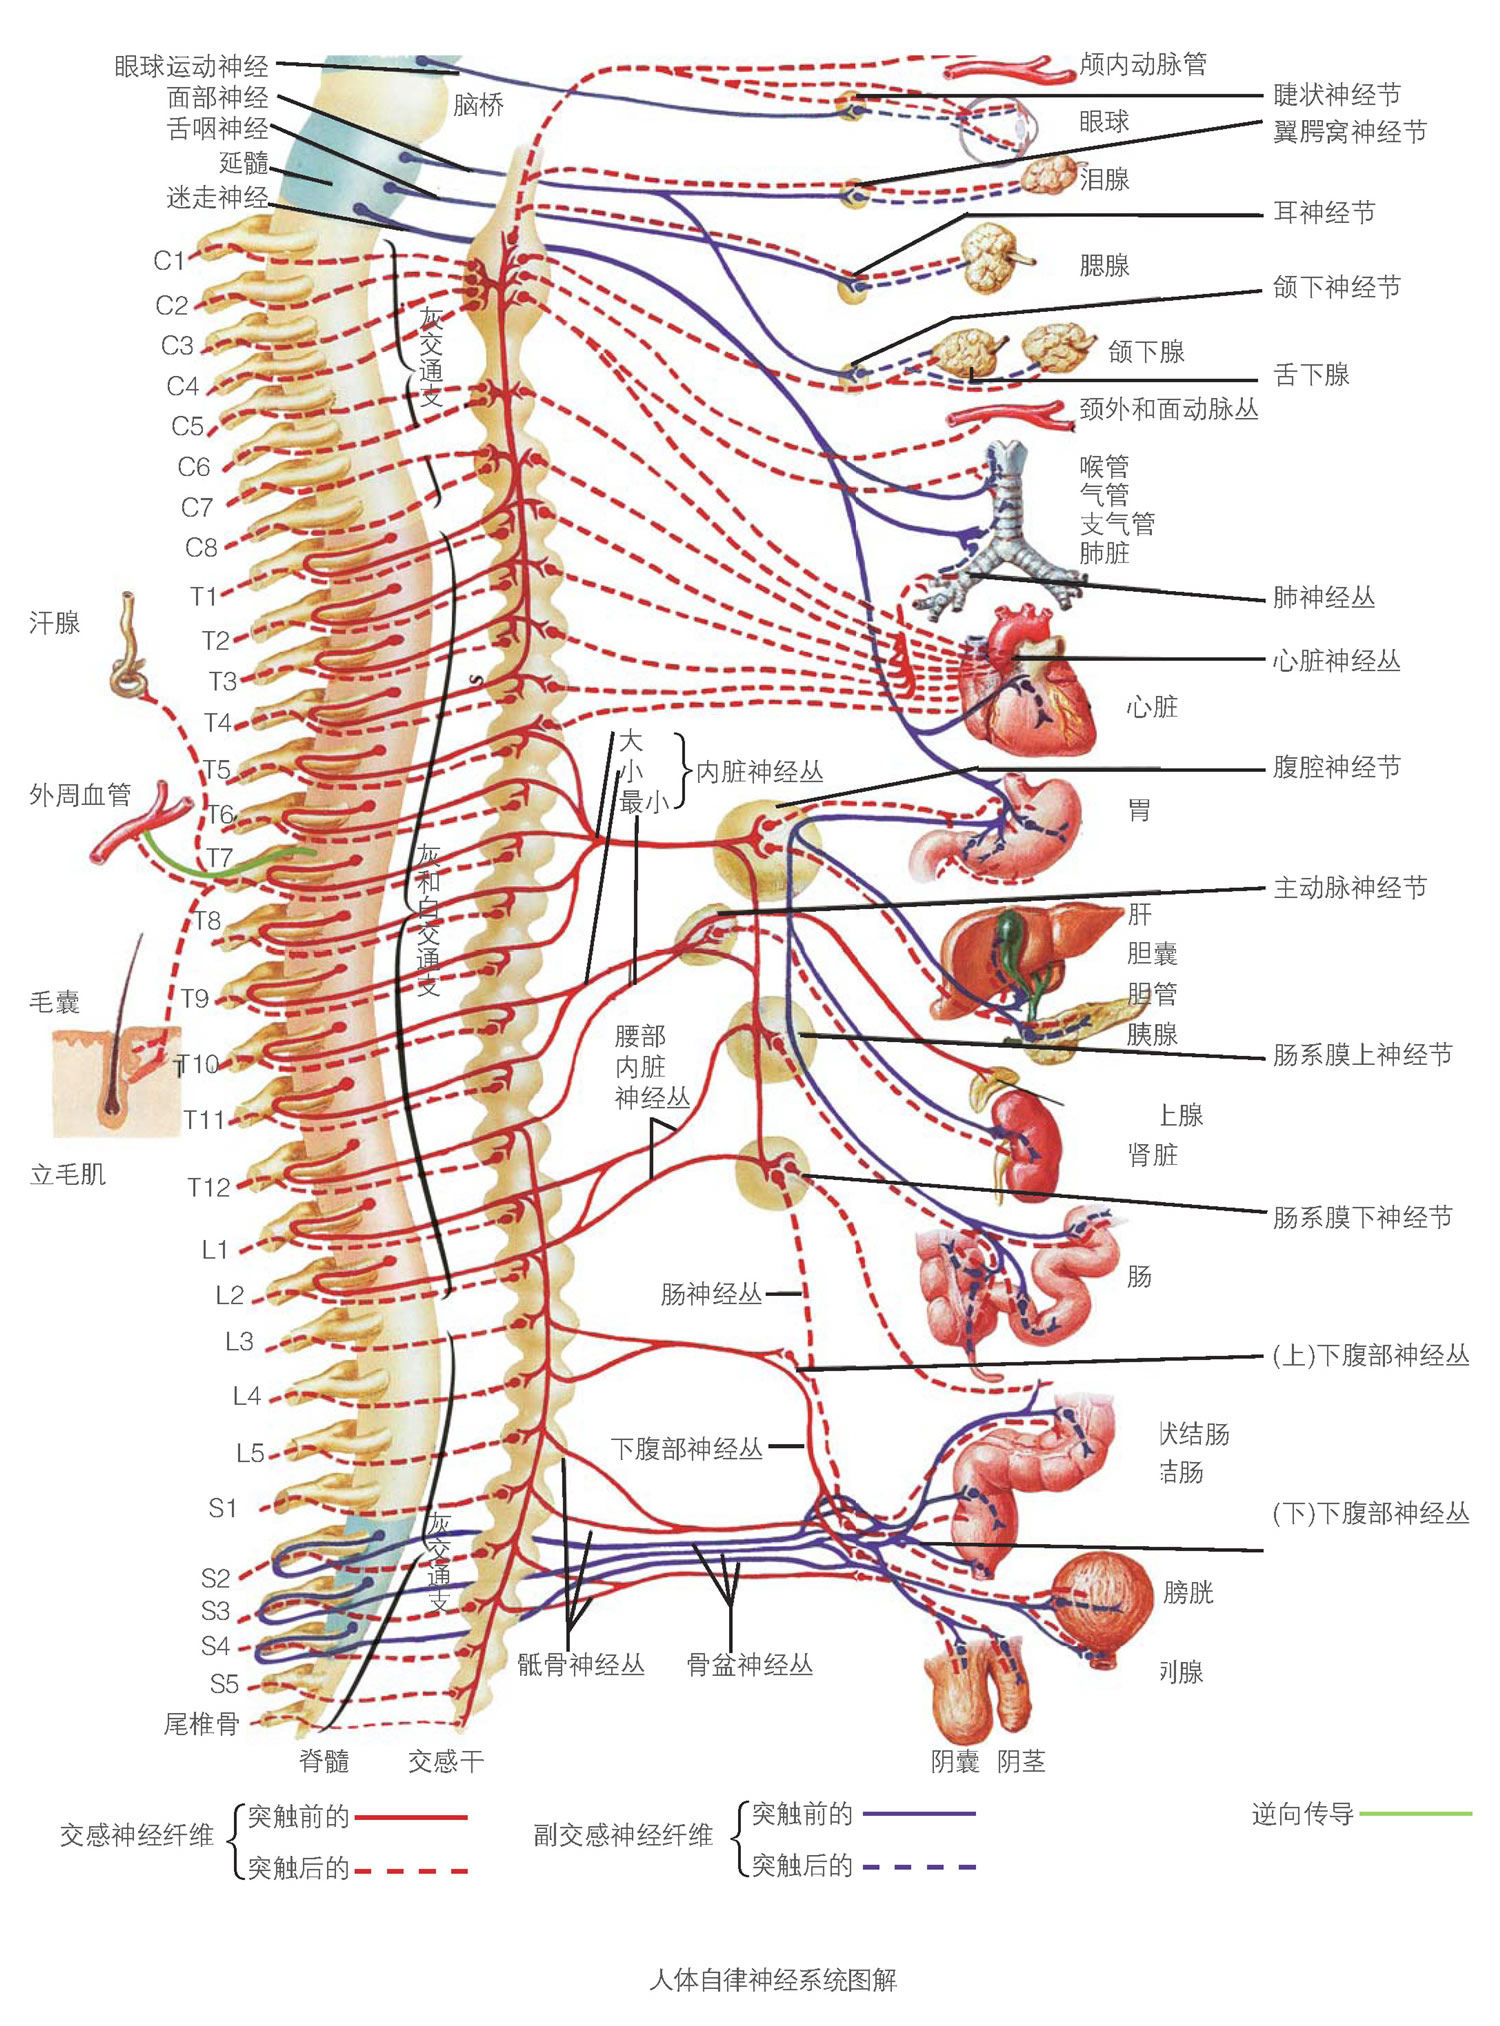 脊柱神经根解剖图图片